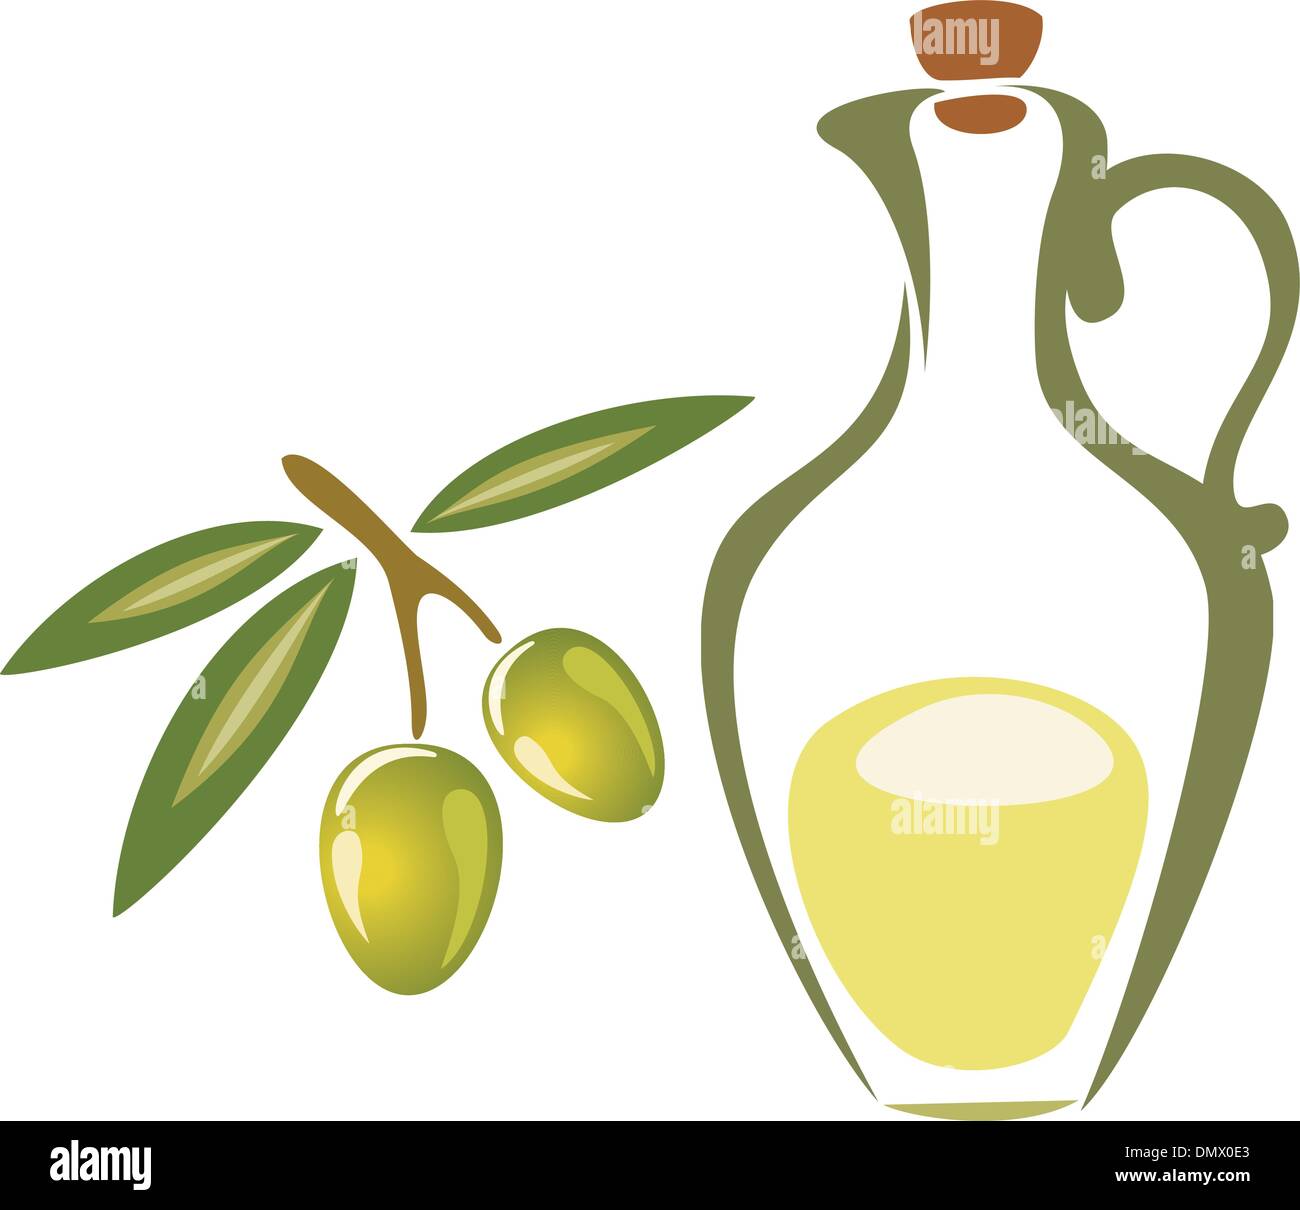 Branche d'olivier stylisé symbole, icône de bouteille avec de l'huile d'olive Illustration de Vecteur